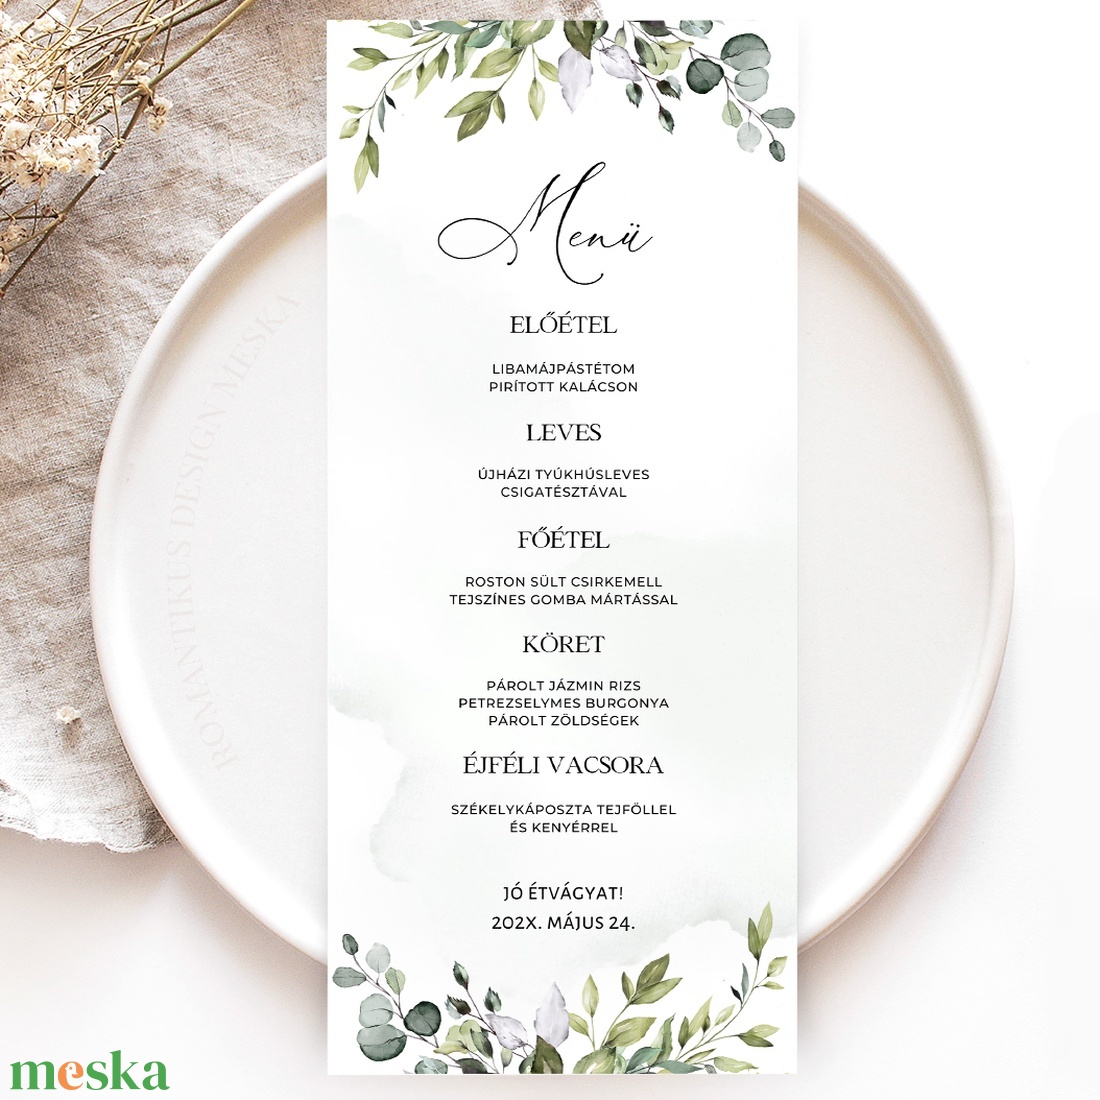 Esküvői Menü, Eskűvő Étlap, Étlap, Menü, Esküvő Vacsora, Esküvői Asztal - esküvő - meghívó & kártya - menü - Meska.hu